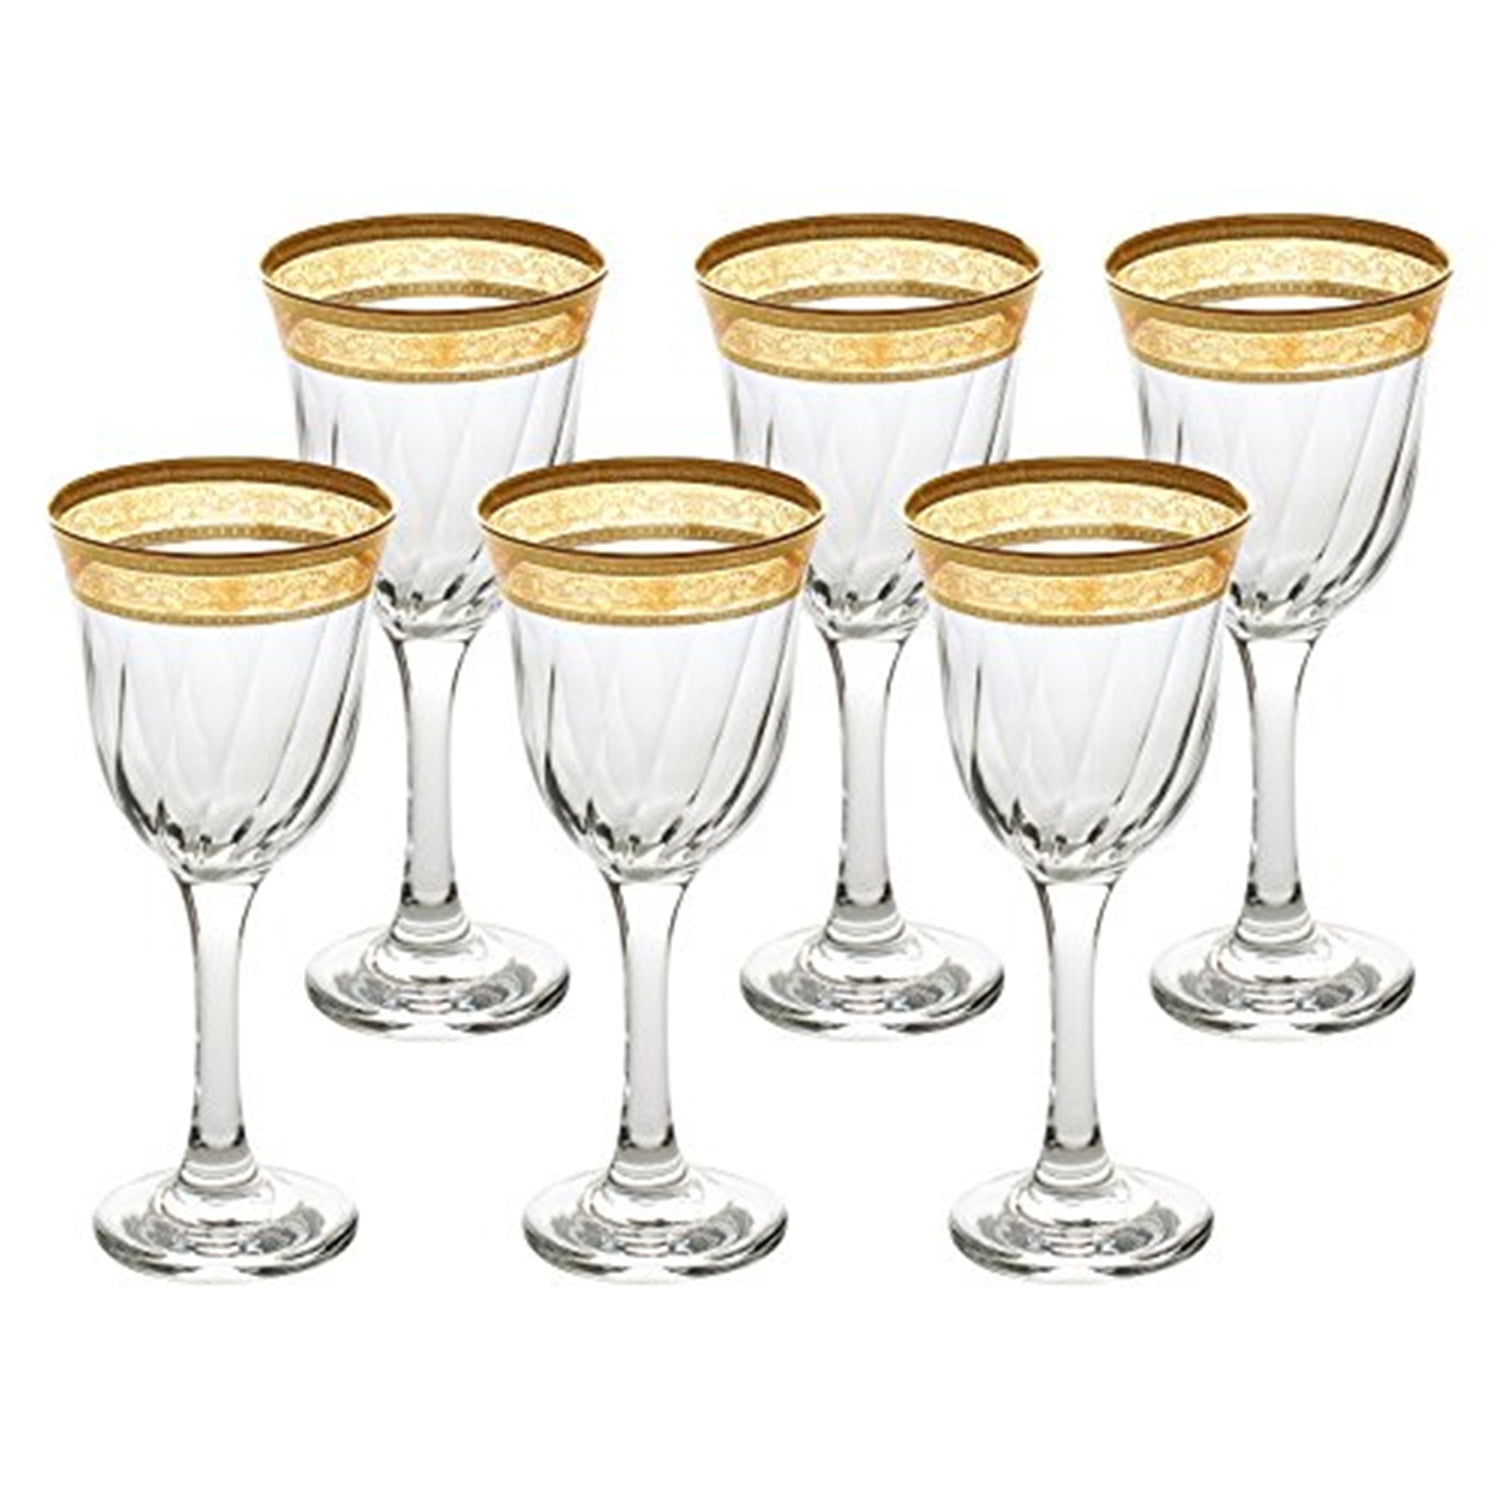 Modern Crystal Goblets Gold Rim Set Romantic Stemmed Wine Glasses 10 Oz 6 